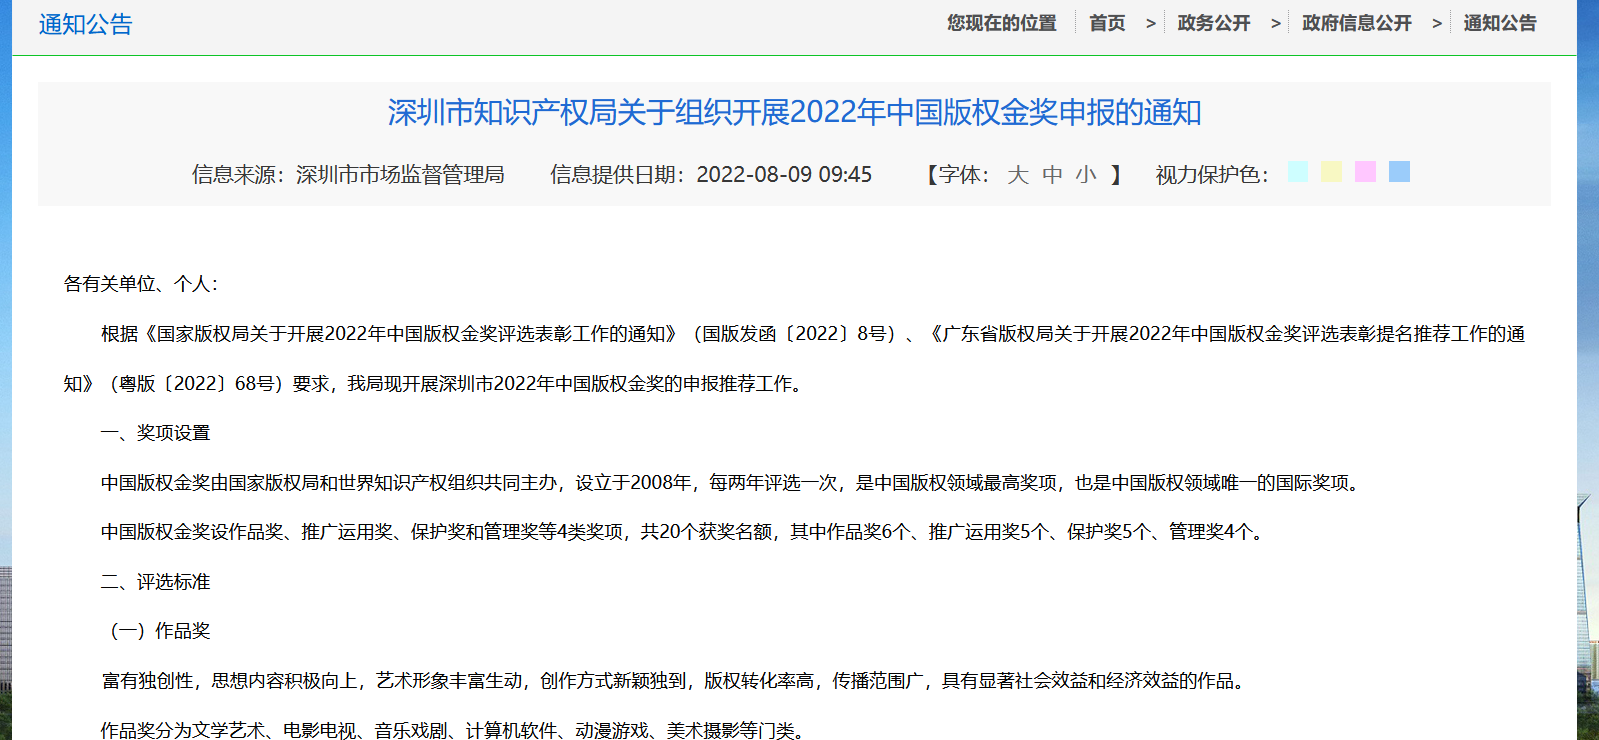 深圳市知识产权局关于组织开展2022年中国版权金奖申报的通知